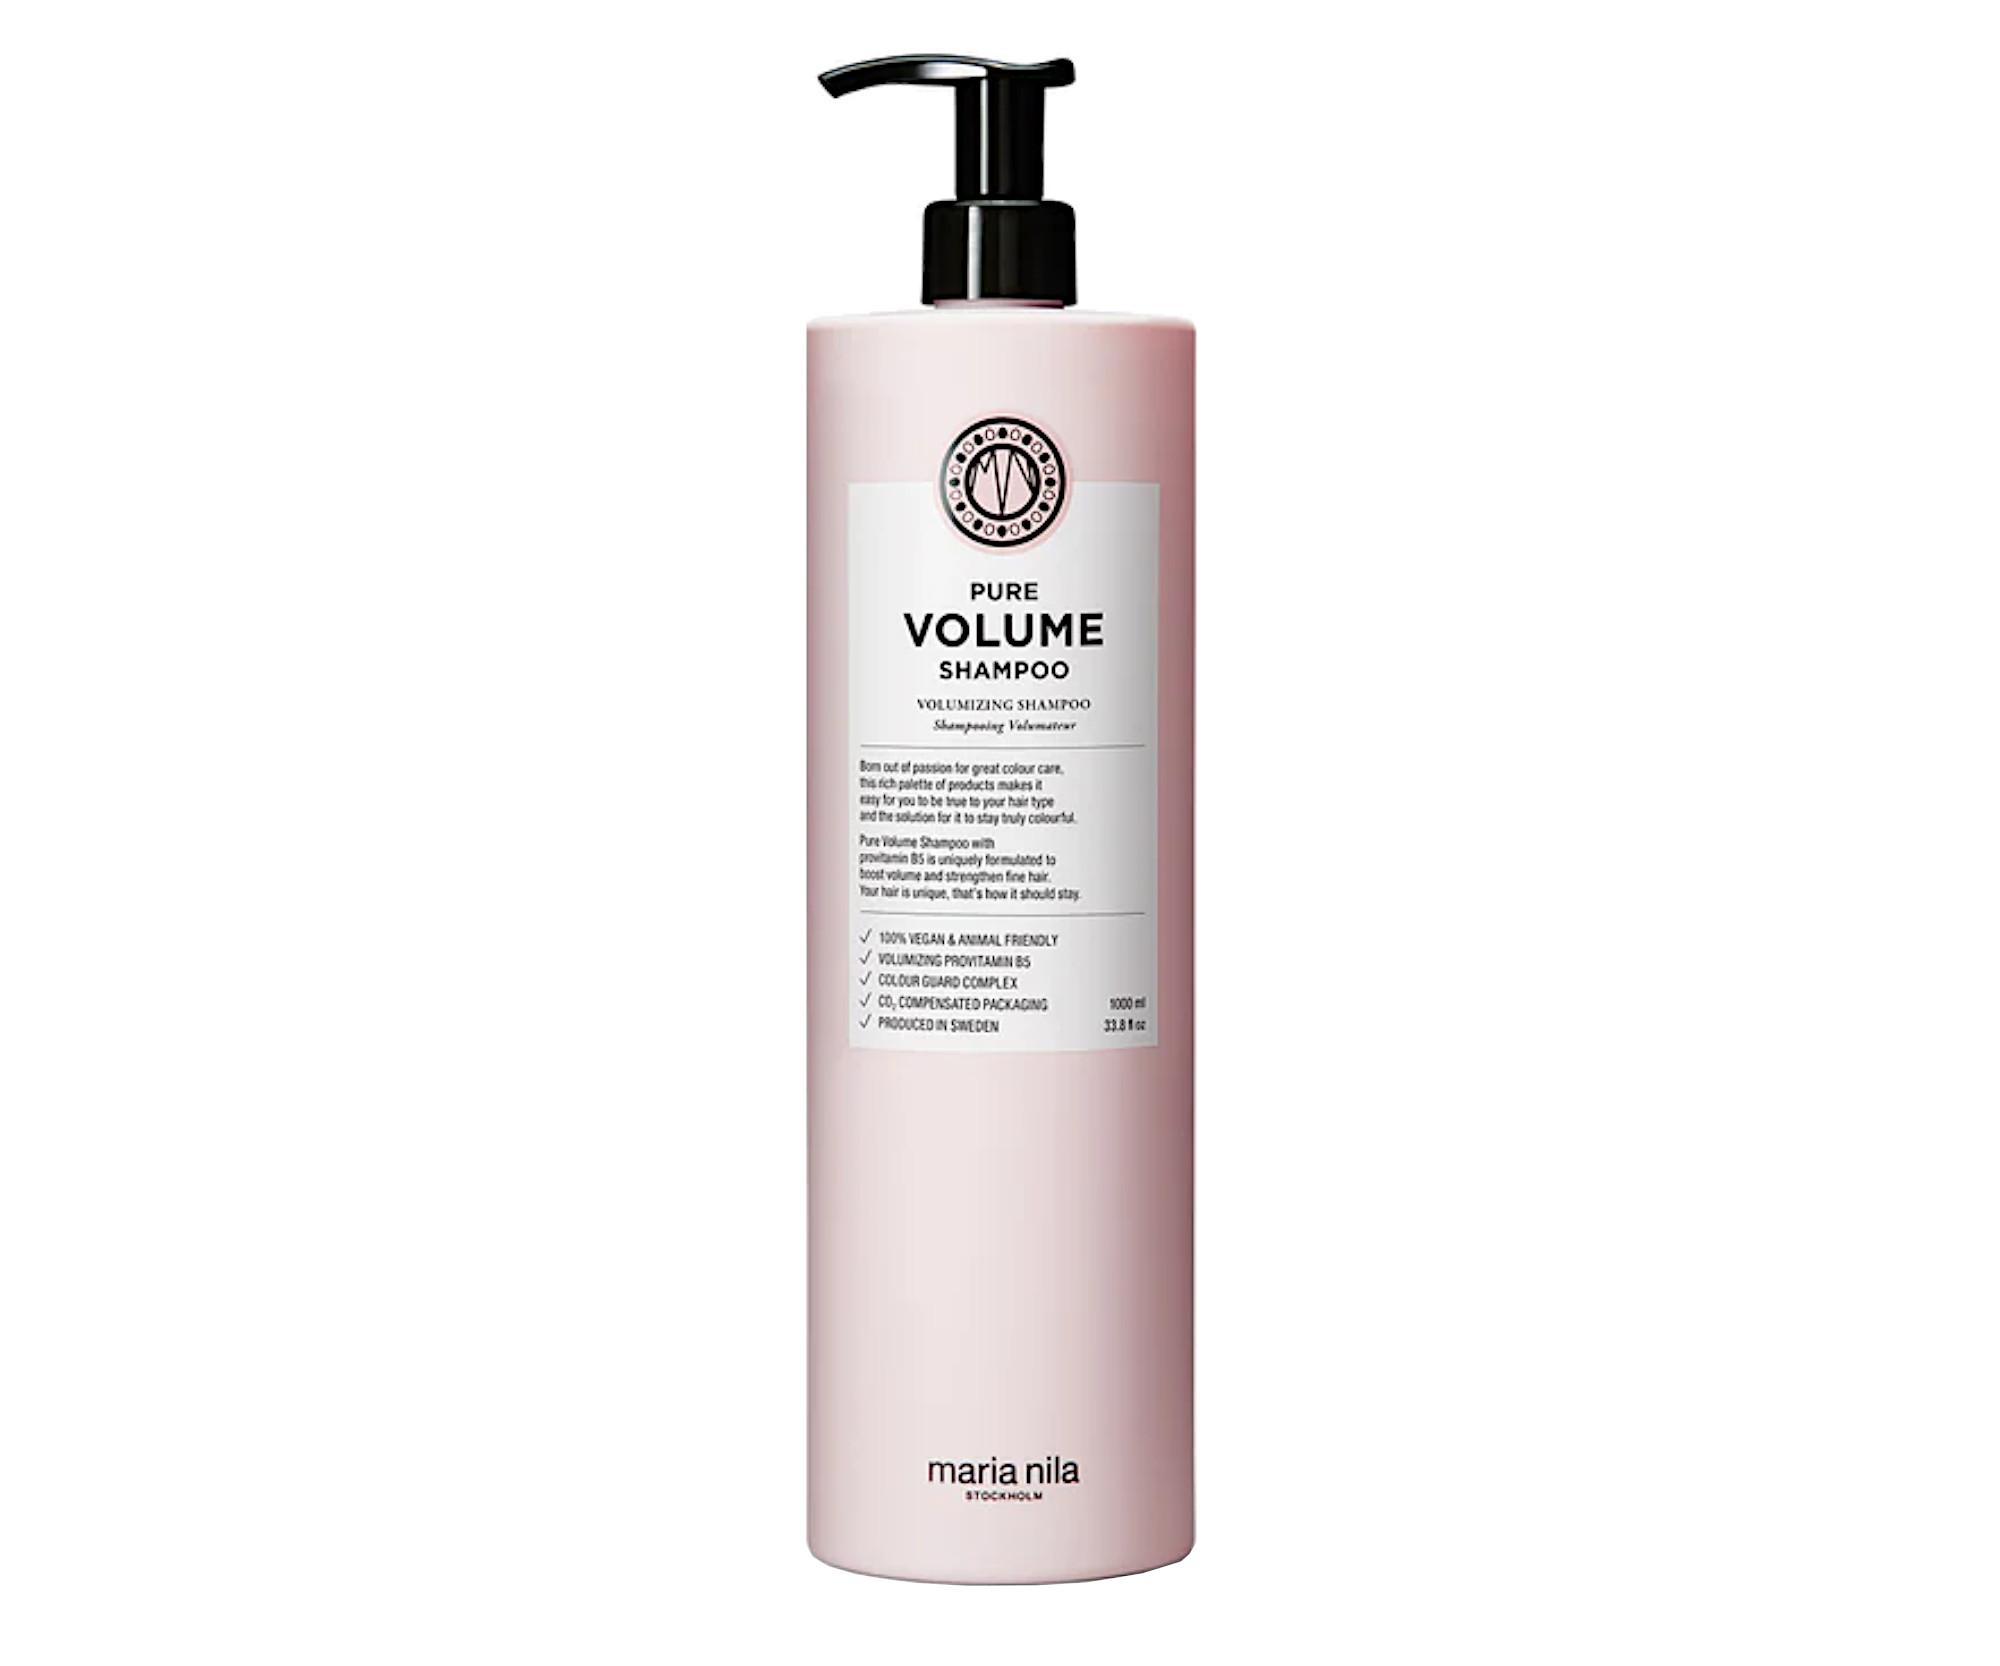 Šampon pro objem jemných vlasů Maria Nila Pure Volume Shampoo - 1000 ml (NF02-3613) + DÁREK ZDARMA